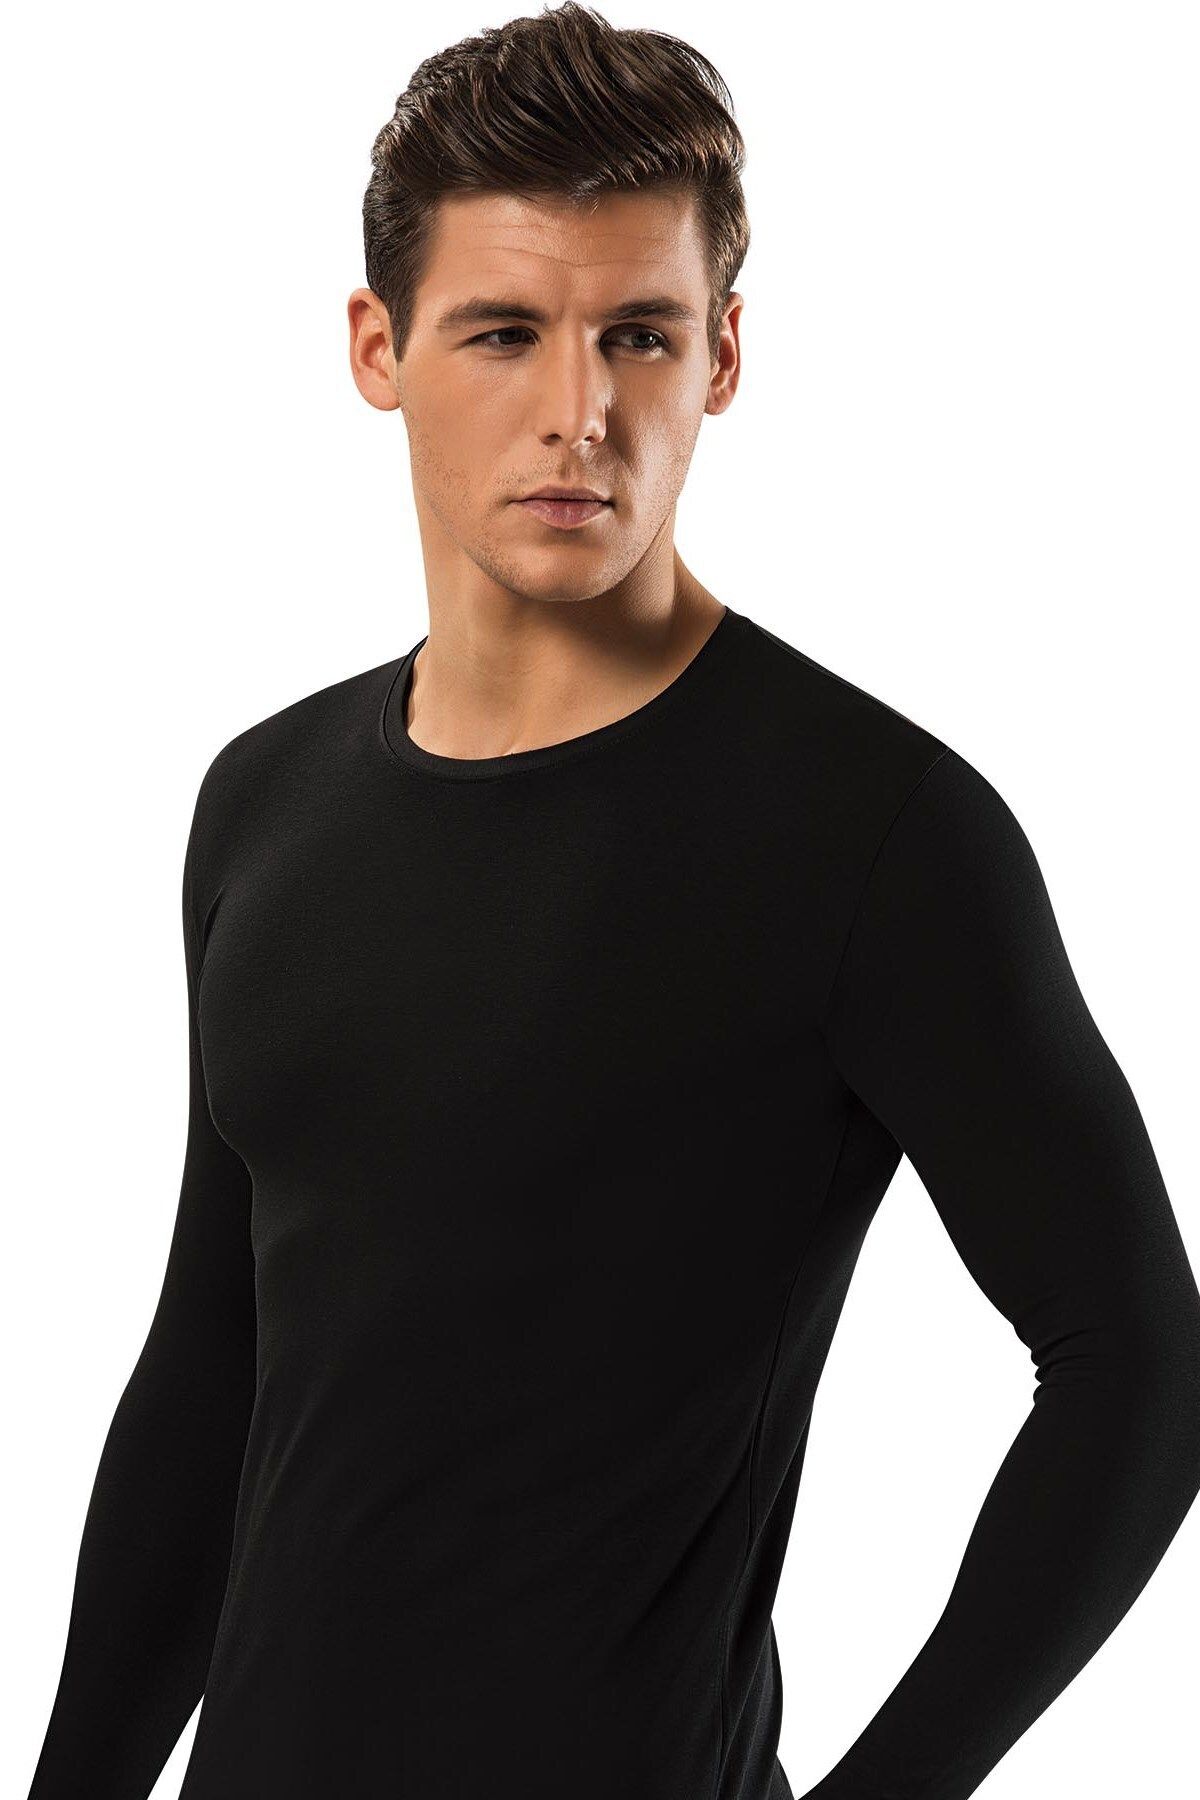 ERDEM İÇ GİYİM Erdem Siyah Slim Fit Uzun Kol T-shirt 1123